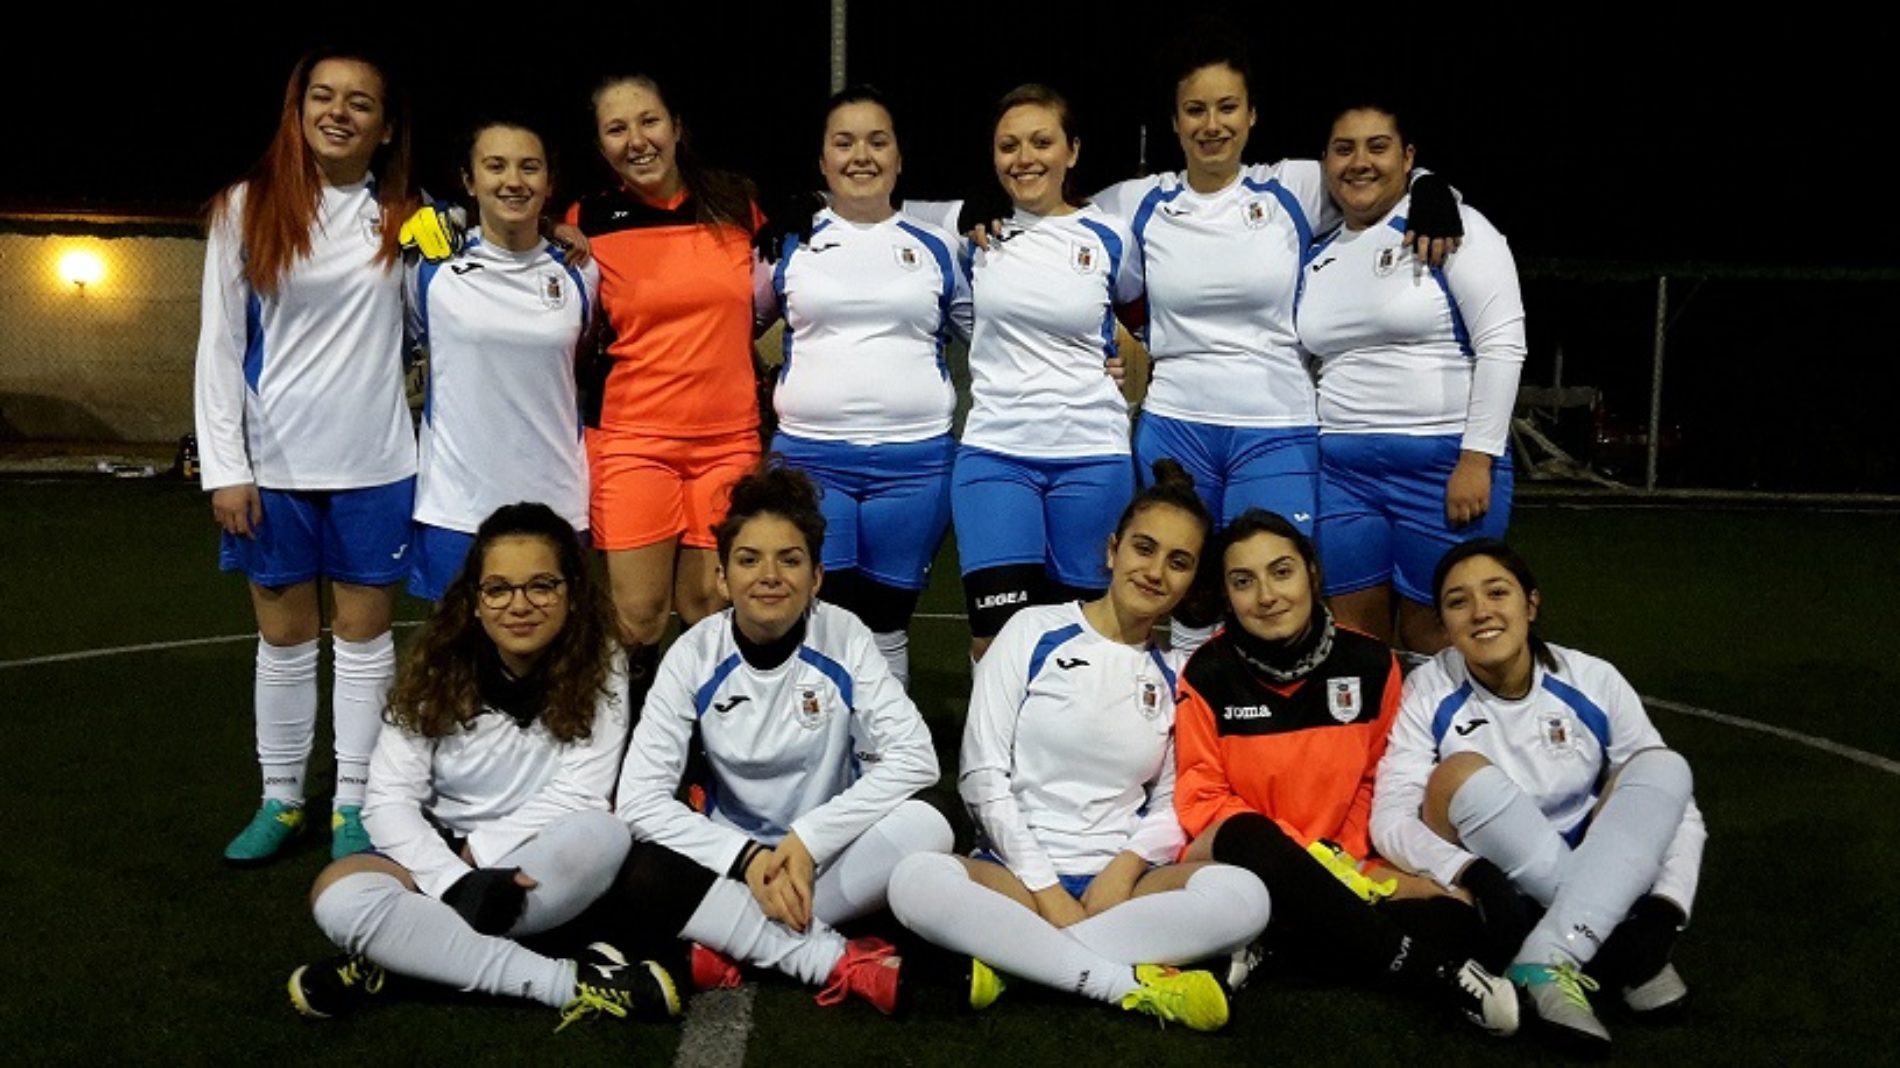 La formazione femminile di Calcio a 5 del Città di Barrafranca ottiene il primo acuto